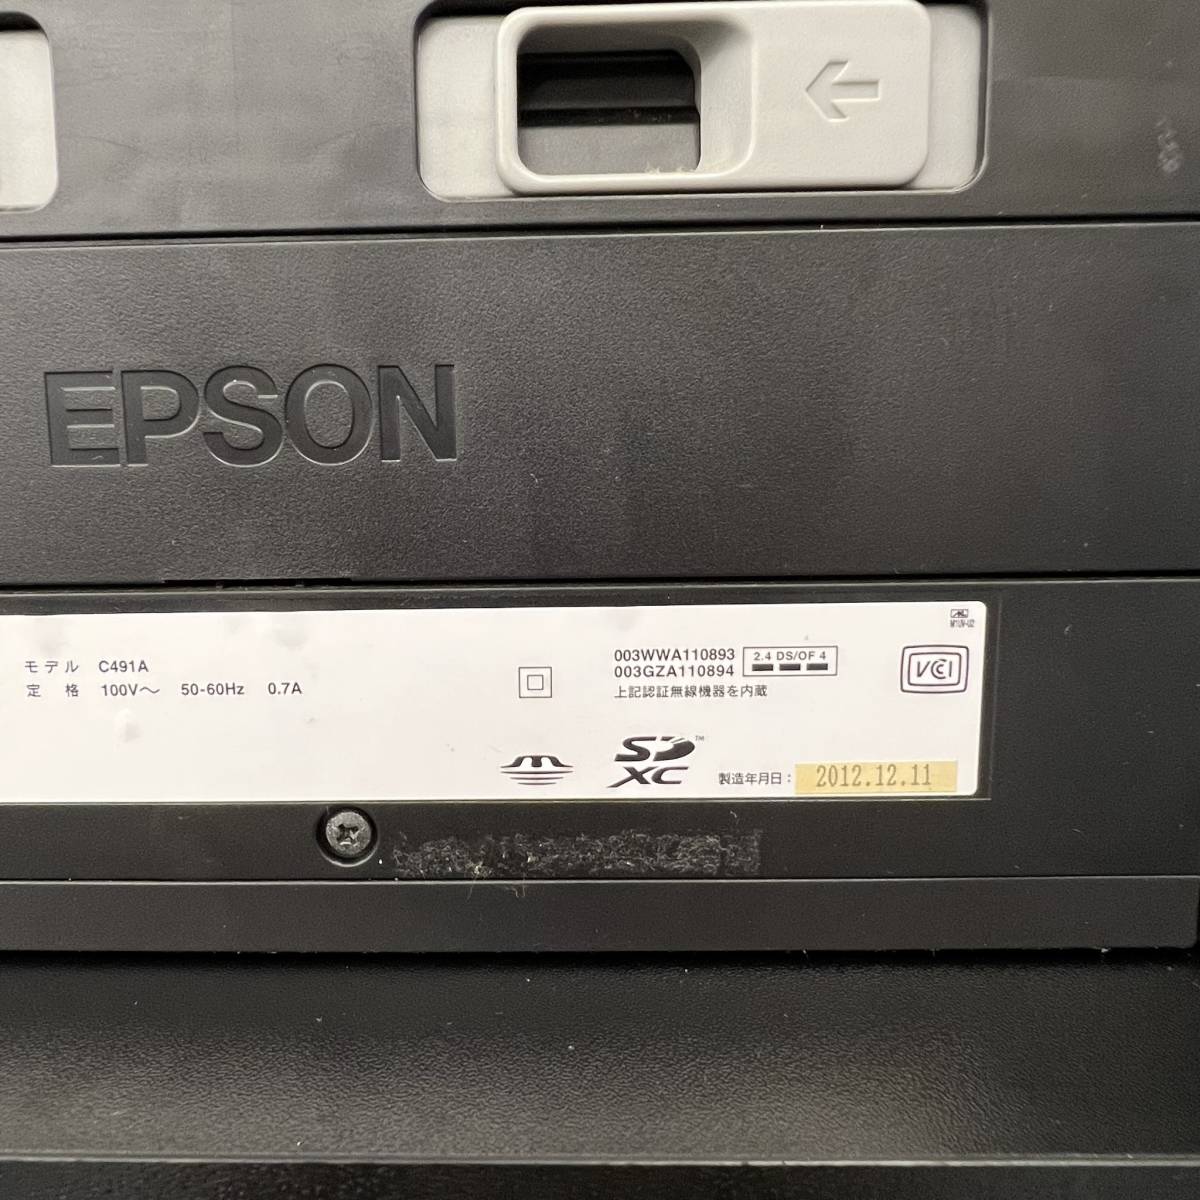 1スタ【通電OK】EPSON エプソン EP-905A プリンター インクジェット複合機 コピー スキャン Wi-Fi ワイヤレス ブラック 中古_画像7